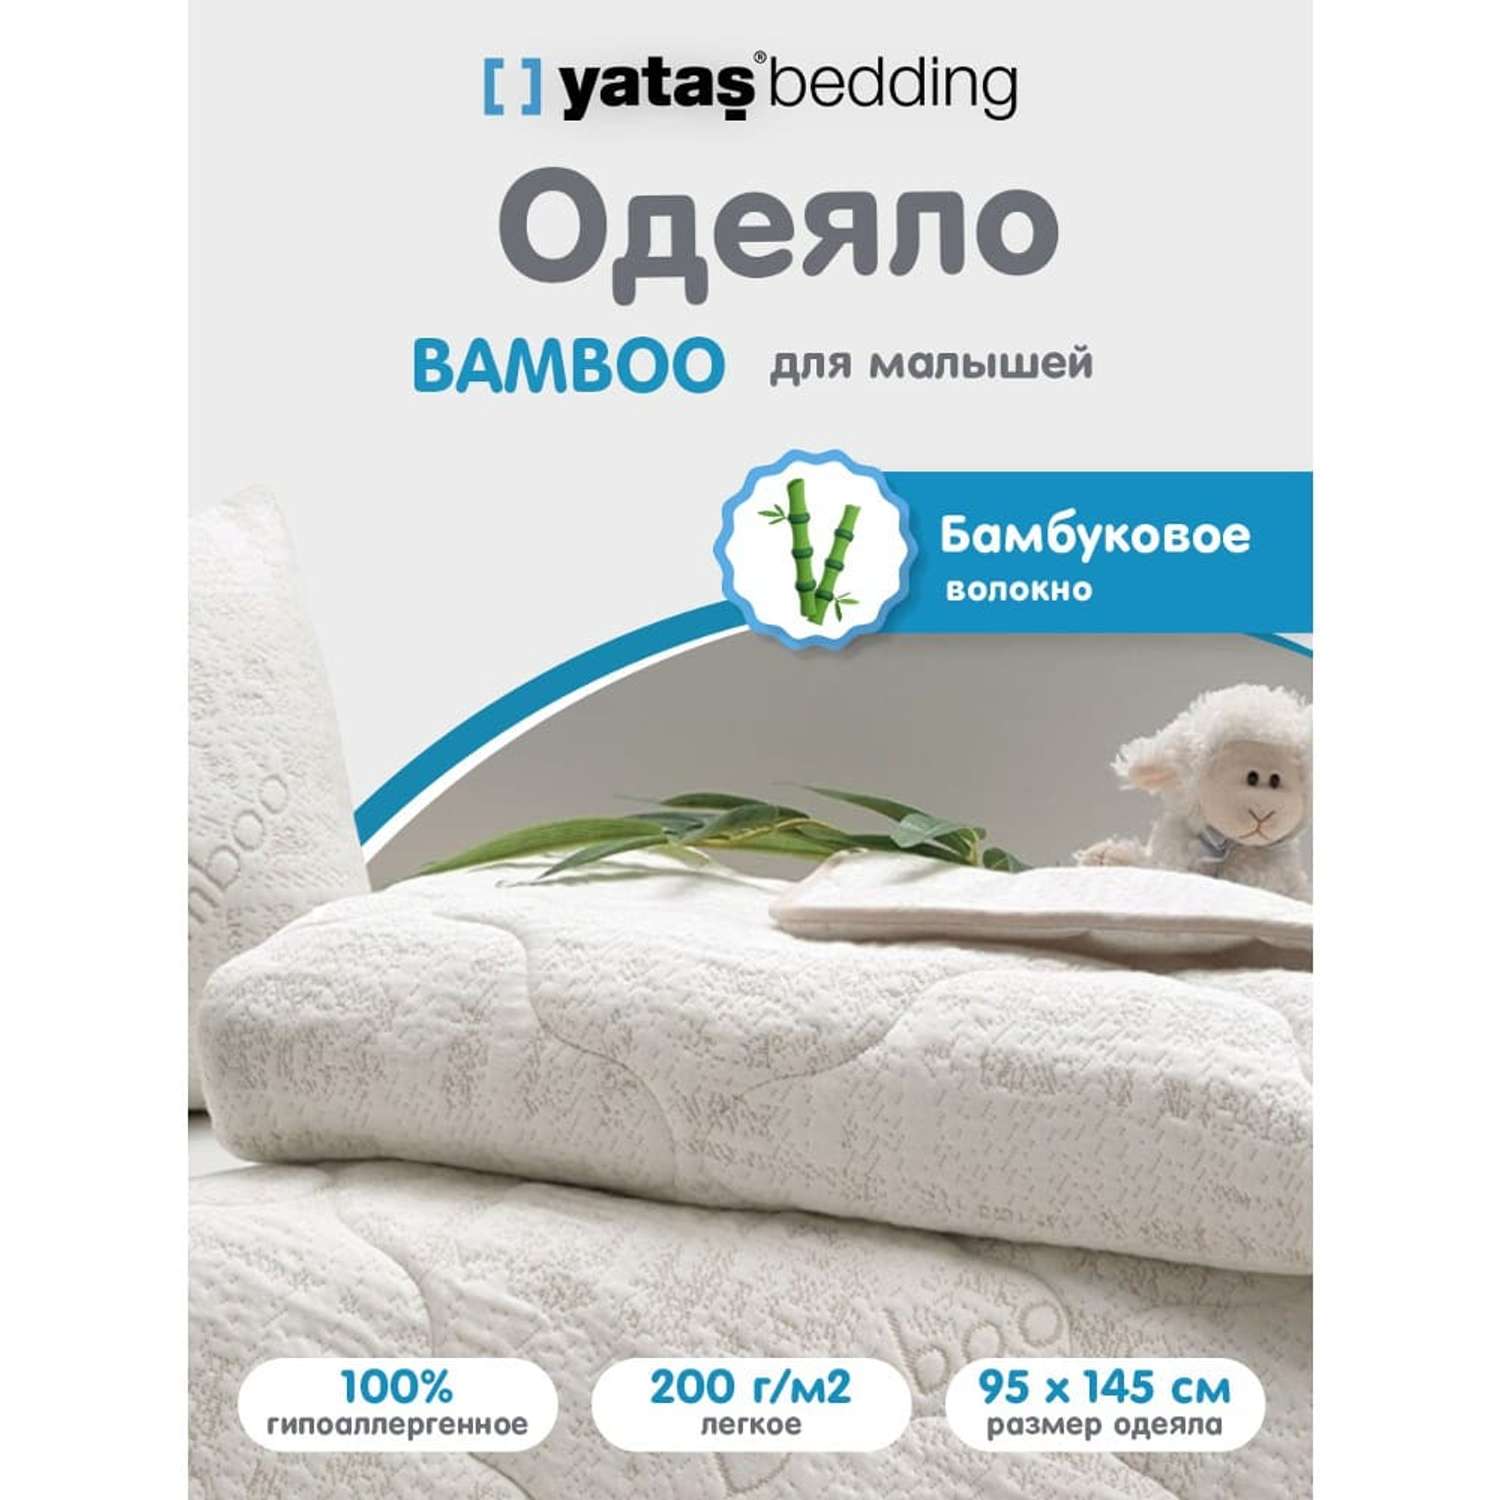 Одеяло детское стеганое Yatas Bedding гипоаллергенное 95x145 см Bamboo - фото 2